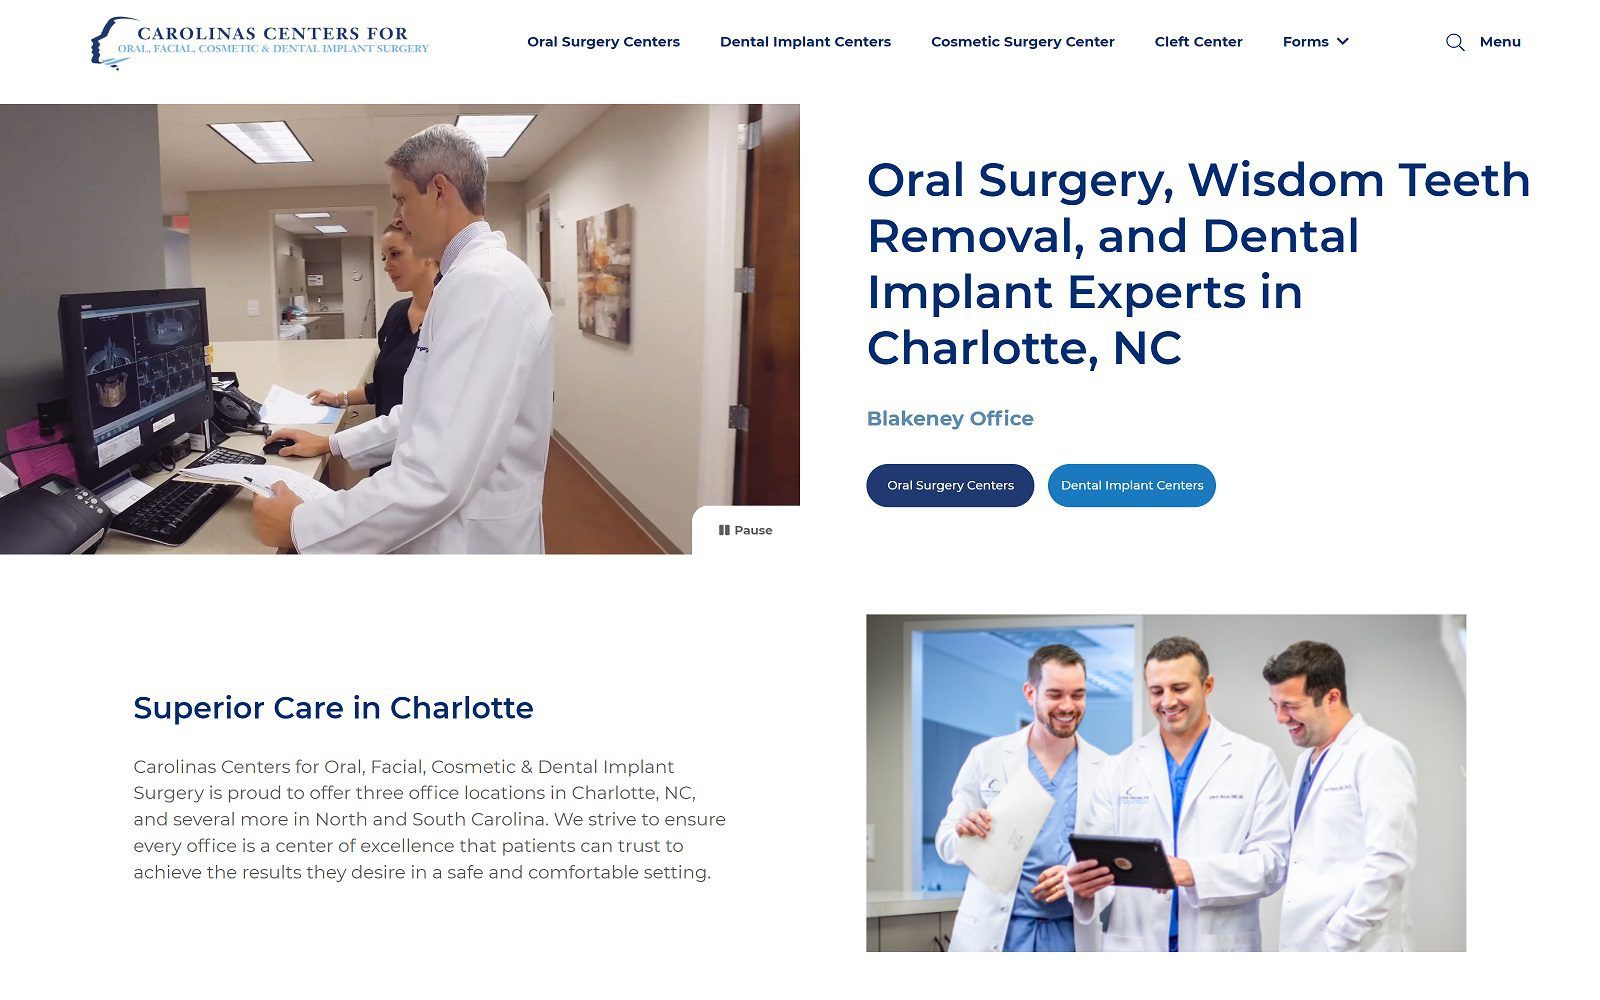 The screenshot of carolinas center for oral & facial surgery & dental implants website